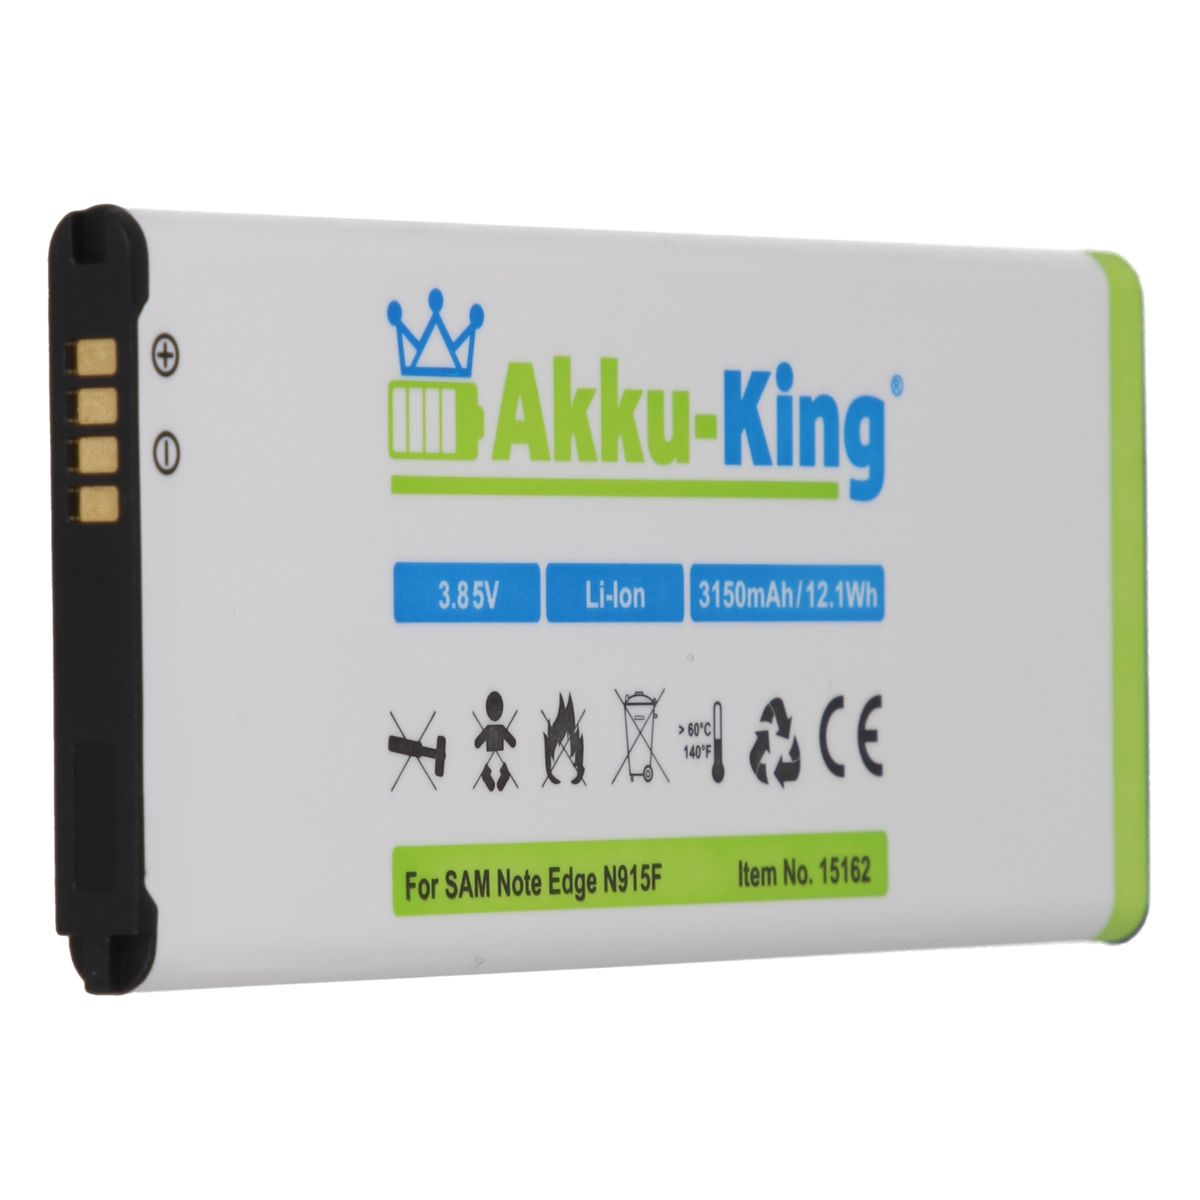 AKKU-KING Akku 3.8 Li-Ion Handy-Akku, Volt, mit EB-BN915BBC Samsung 3150mAh kompatibel